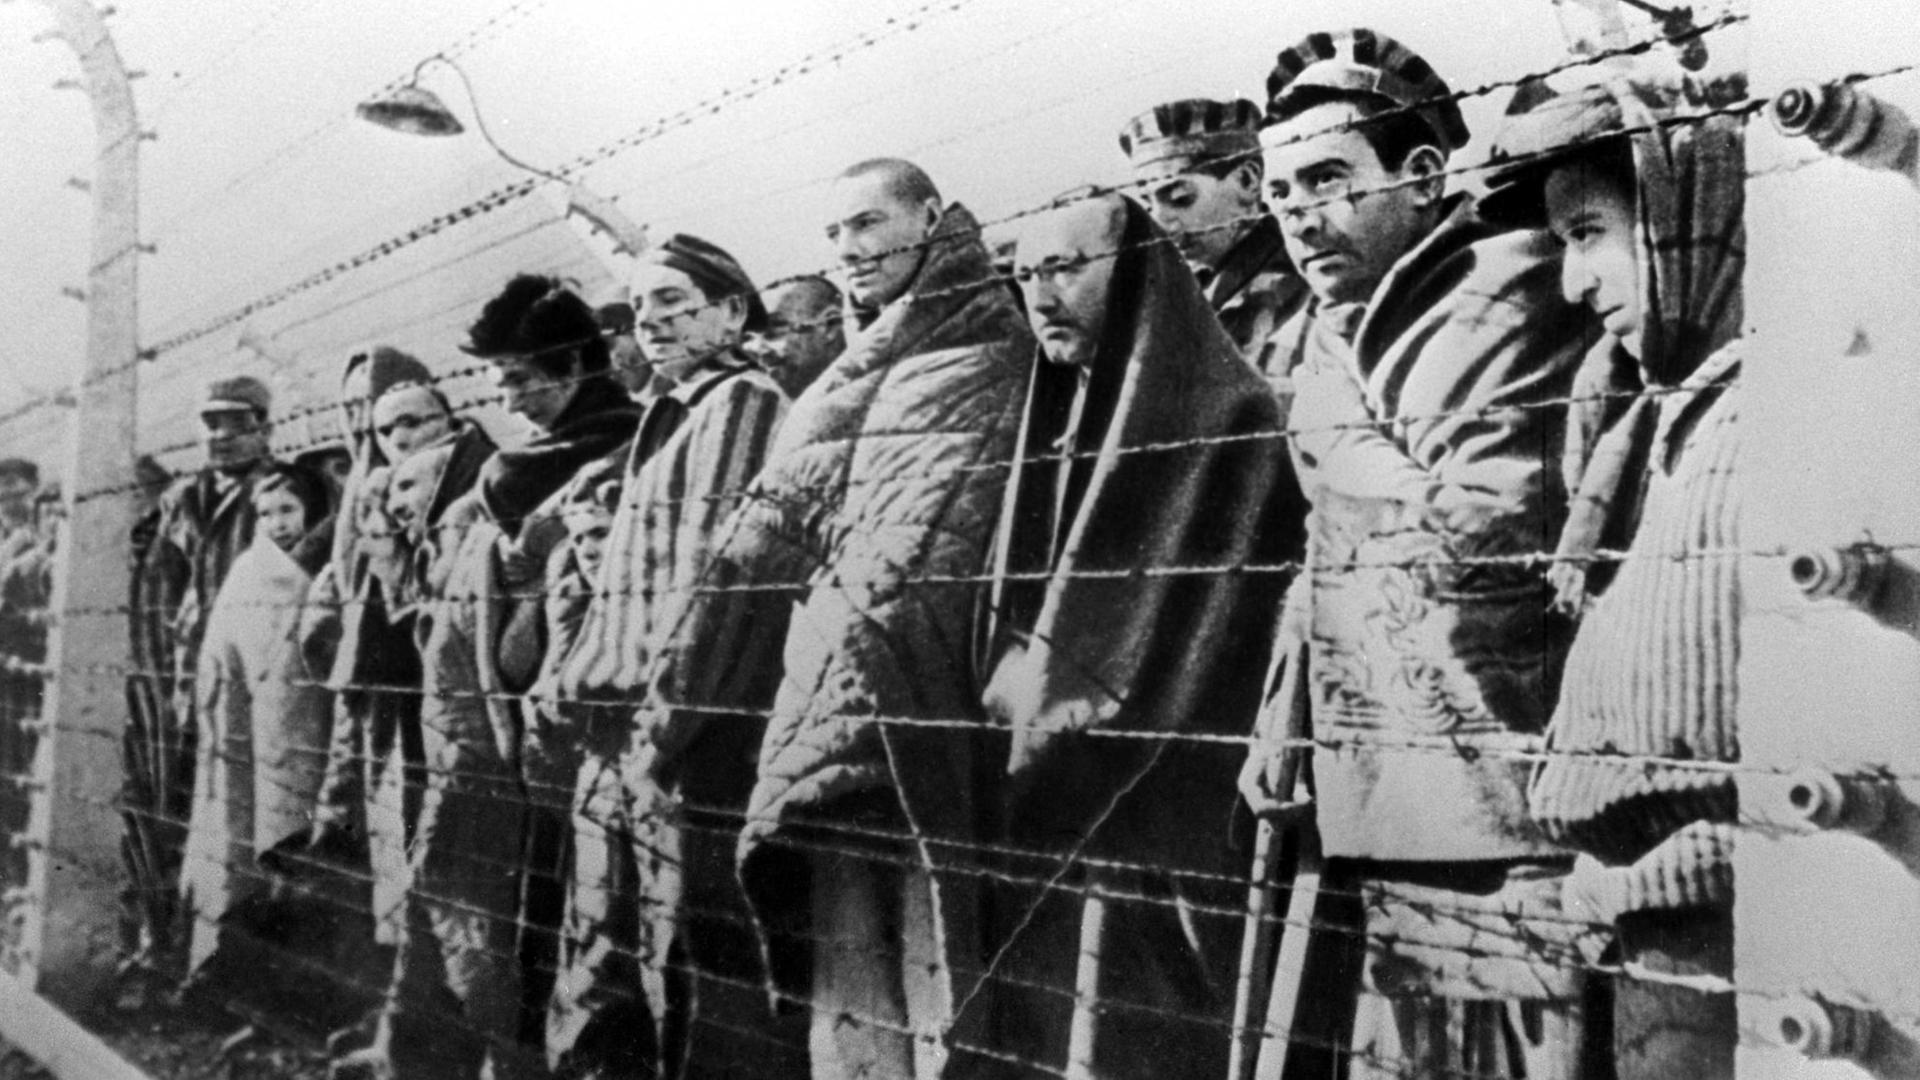 Hinter Stacheldraht stehen Menschen im Vernichtungslager Auschwitz 1945, die Aufnahme ist schwarz-weiß